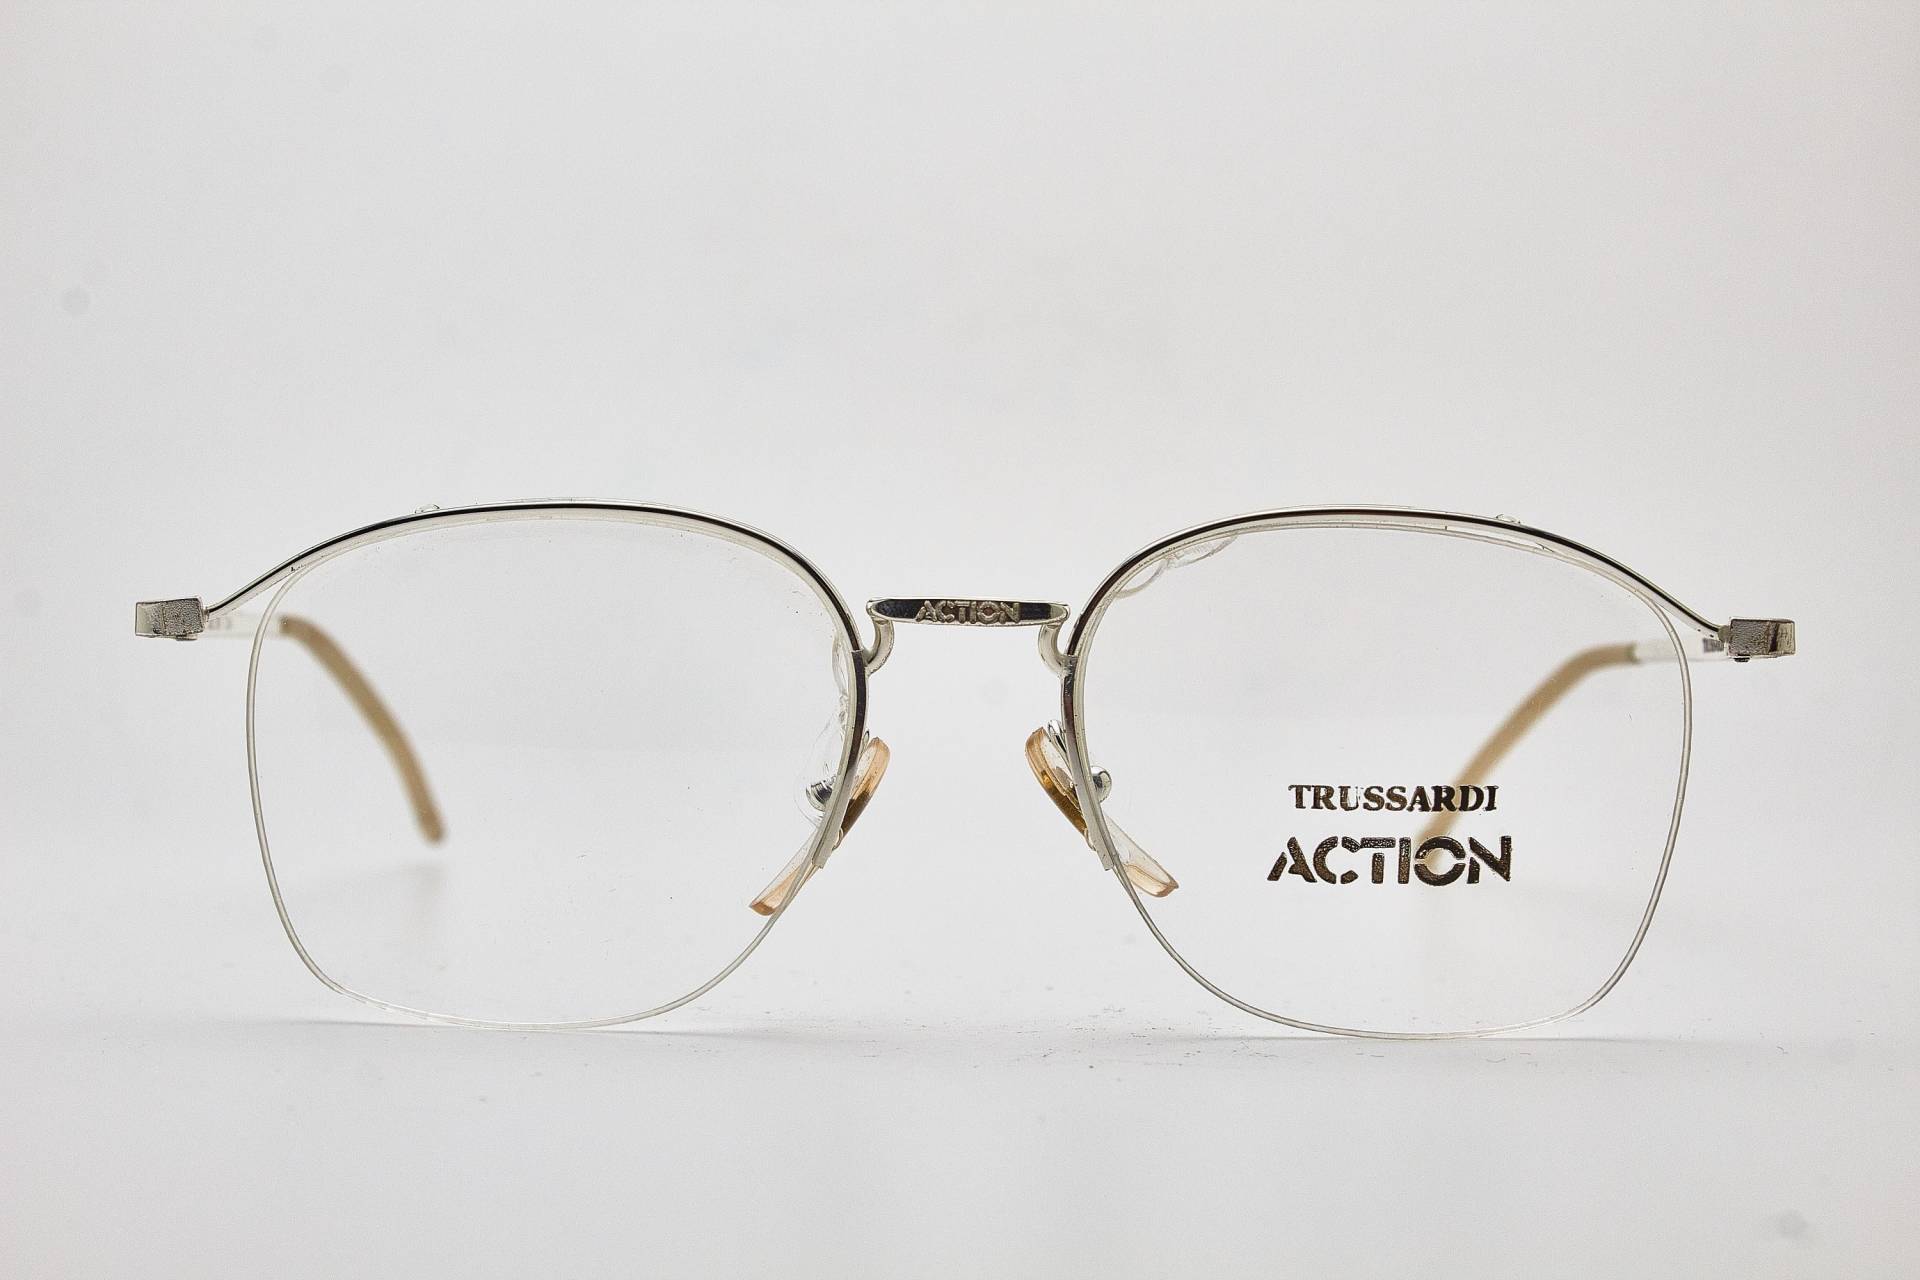 Runde Brille 1980Er Jahre /Trussardi/ Action Atr3 Silver Frame/Hipster Brillen/Runde Brillen/Vintage Brillen/1980Er Sonnenbrillen/Runde Brillen von VintageGlassesVault